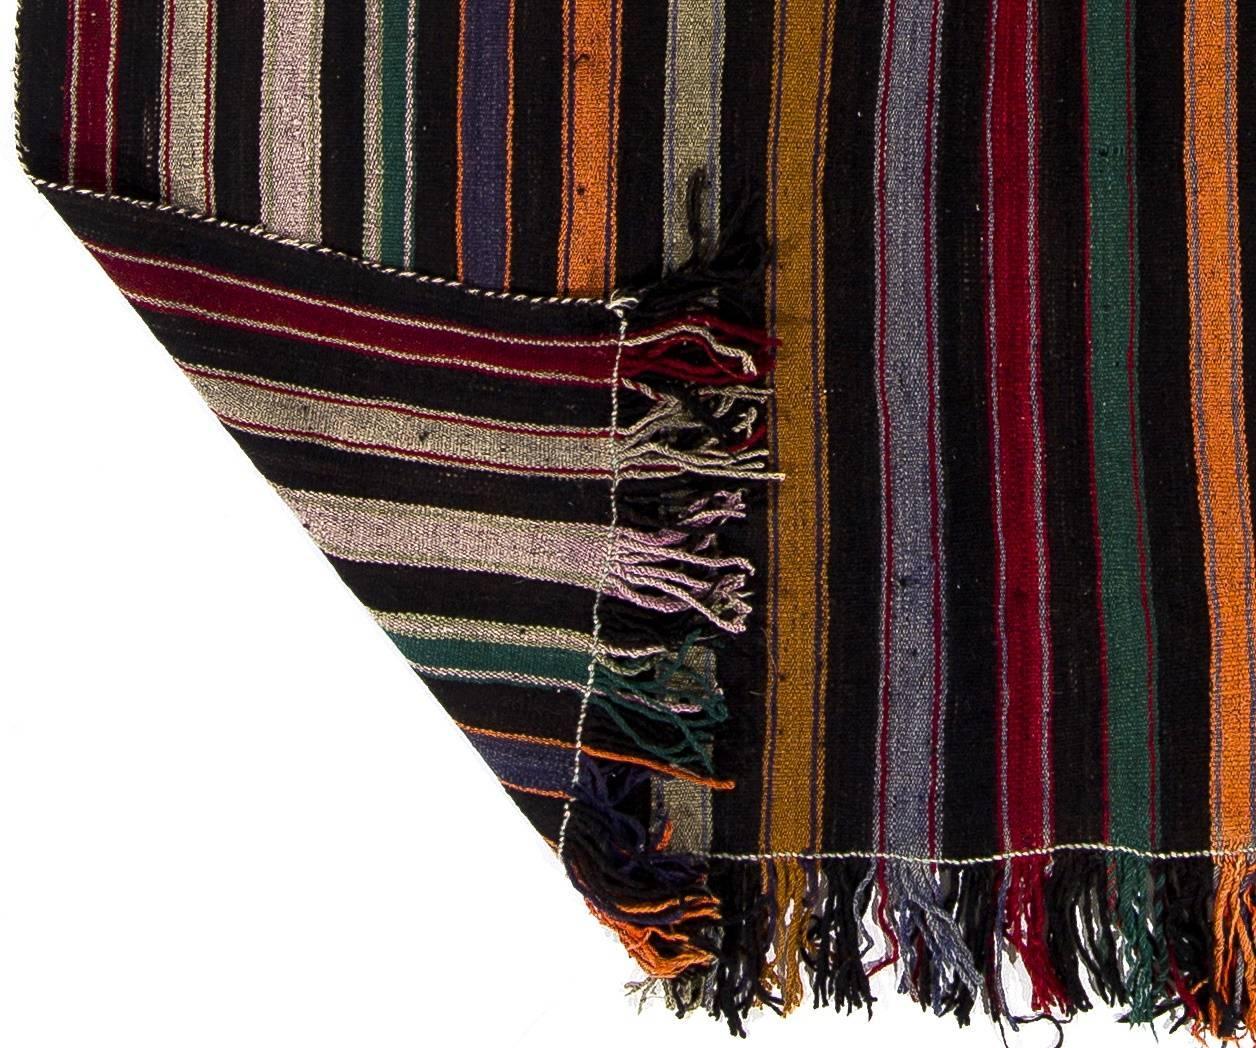 Ein handgewebter Vintage-Kilim (flachgewebter Teppich) aus der Osttürkei. 100% natürliche Wolle.
Diese Art von Kelims wurde im 20. Jahrhundert in ganz Anatolien für den täglichen Gebrauch und nicht für den Wiederverkauf oder den Export hergestellt